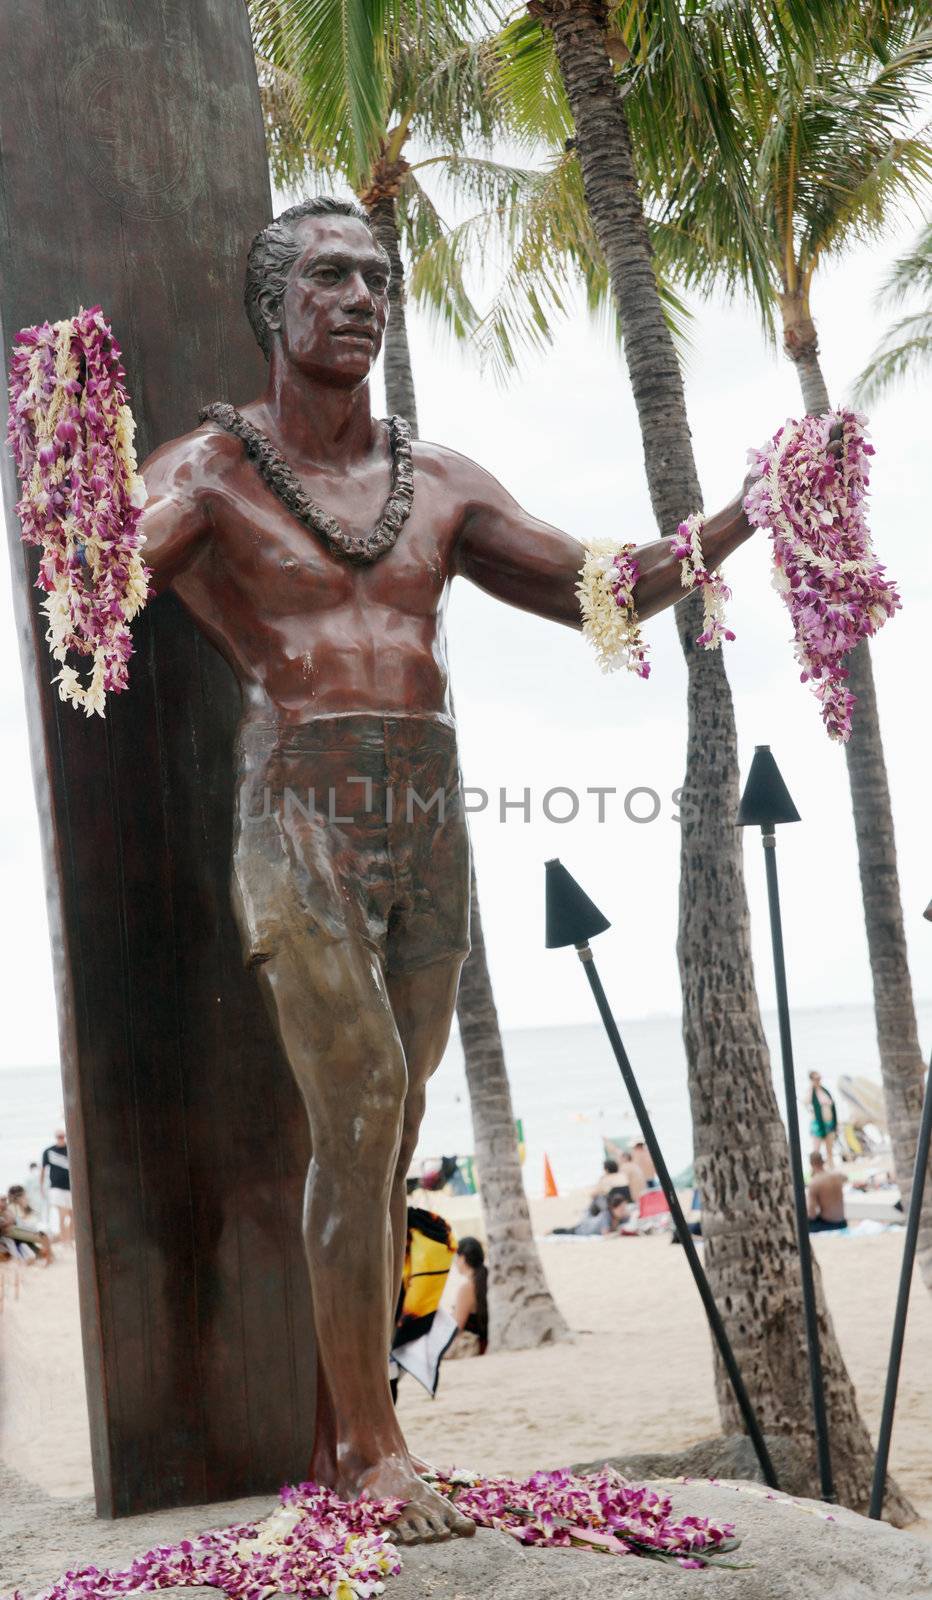 Statue of Duke Kahanamoku Waikiki, Oahu Island Hawaii by Marcus